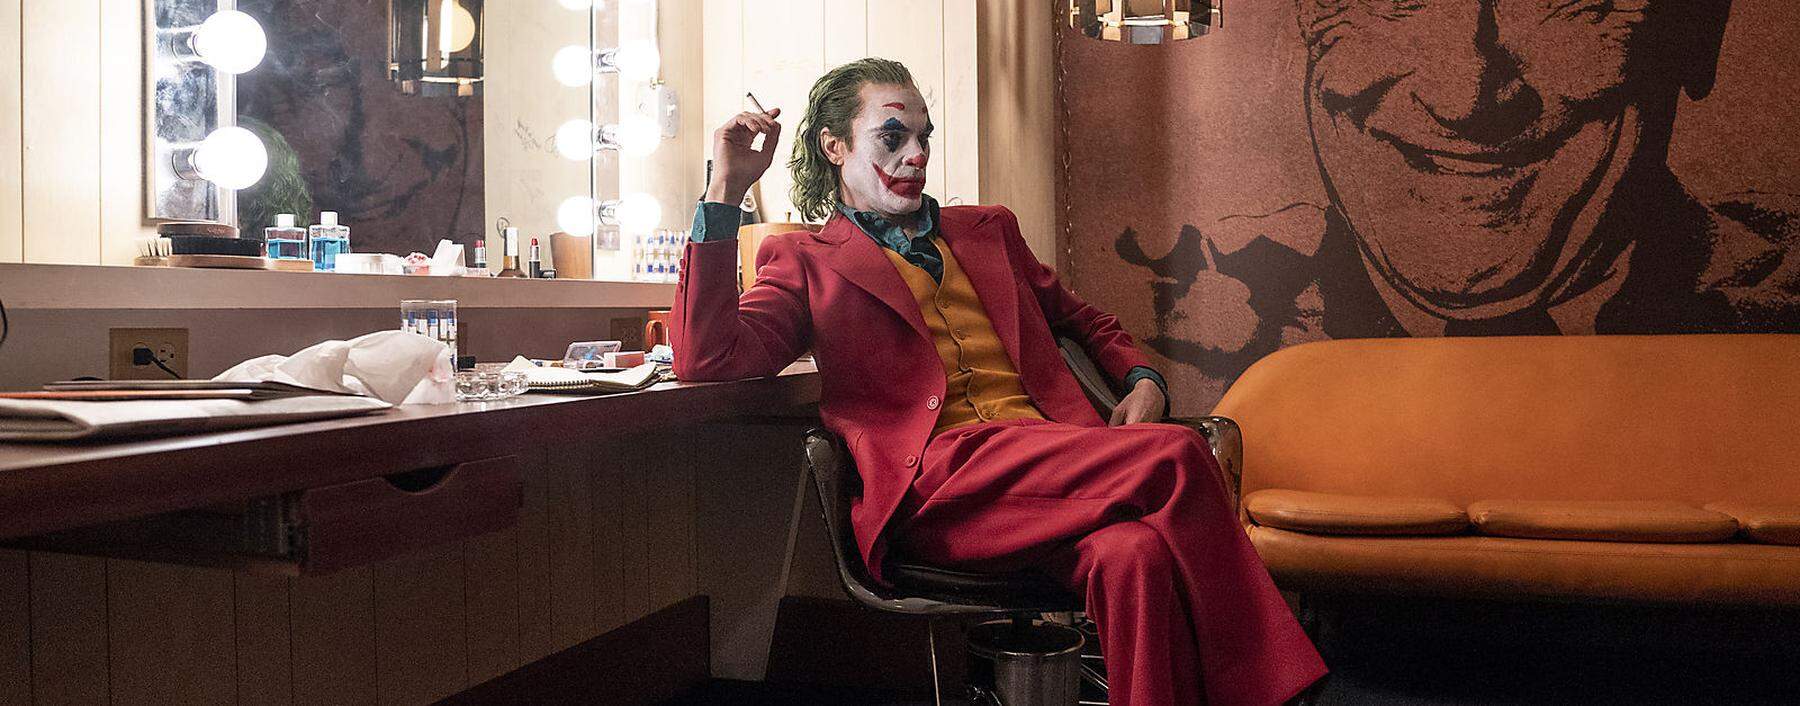 Chancenkaiser beim Rennen um den besten Film ist “Joker” mit 11 Nominierungen.